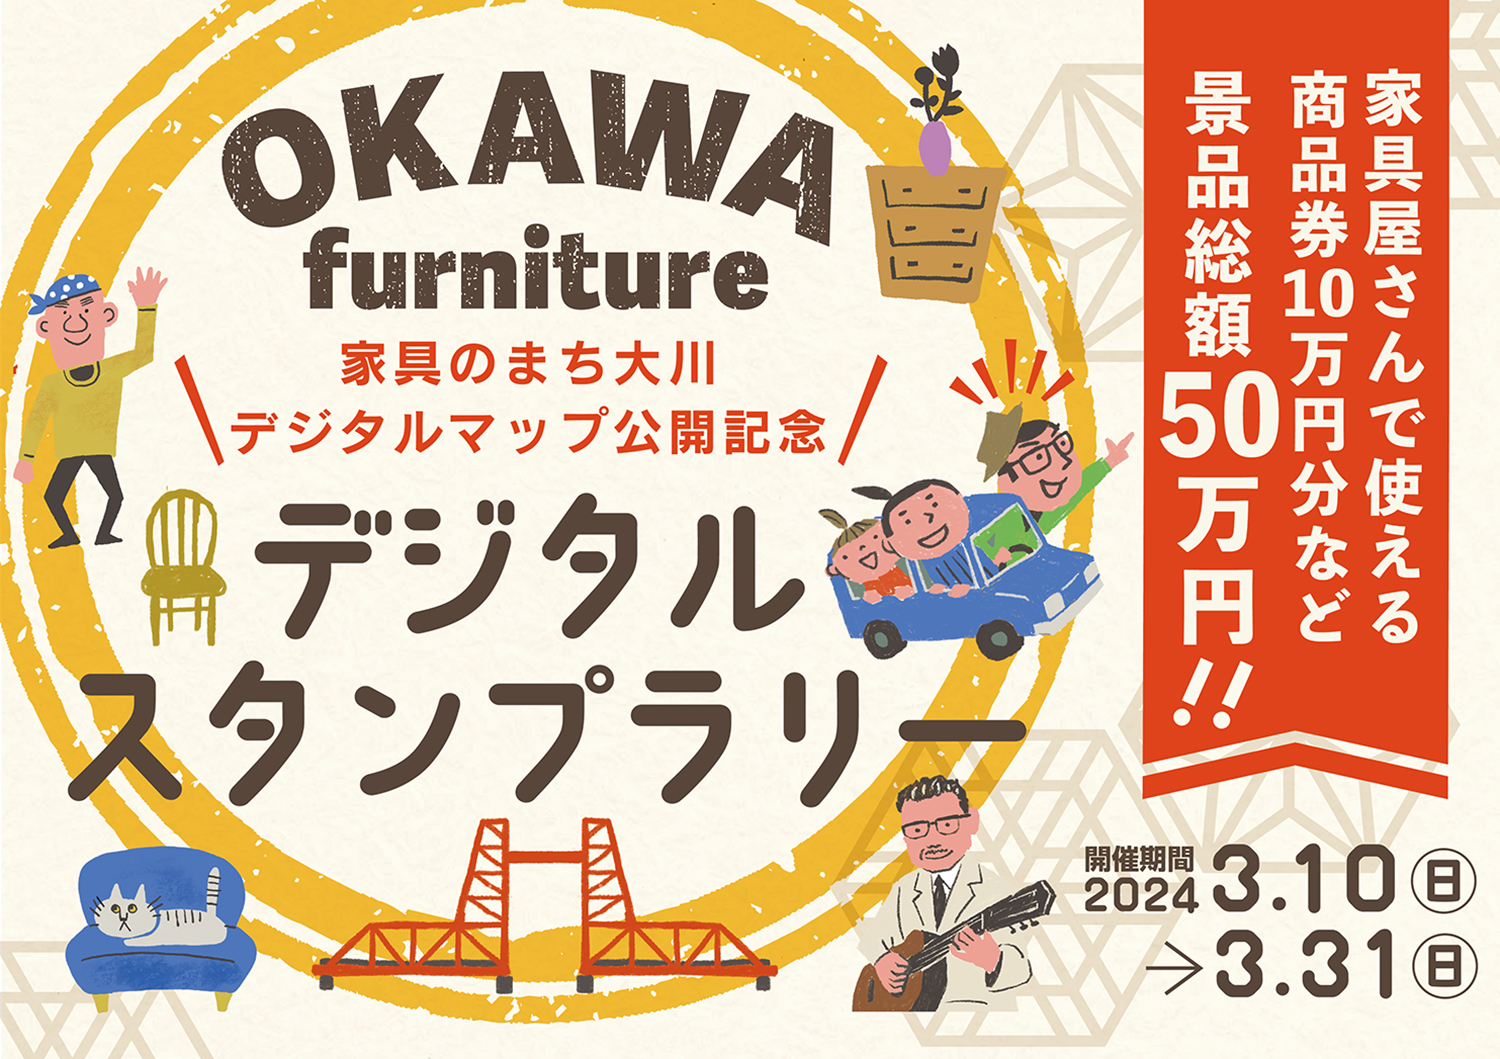 家具のまち大川デジタルマップ』の公開を記念して、 景品総額50万円分